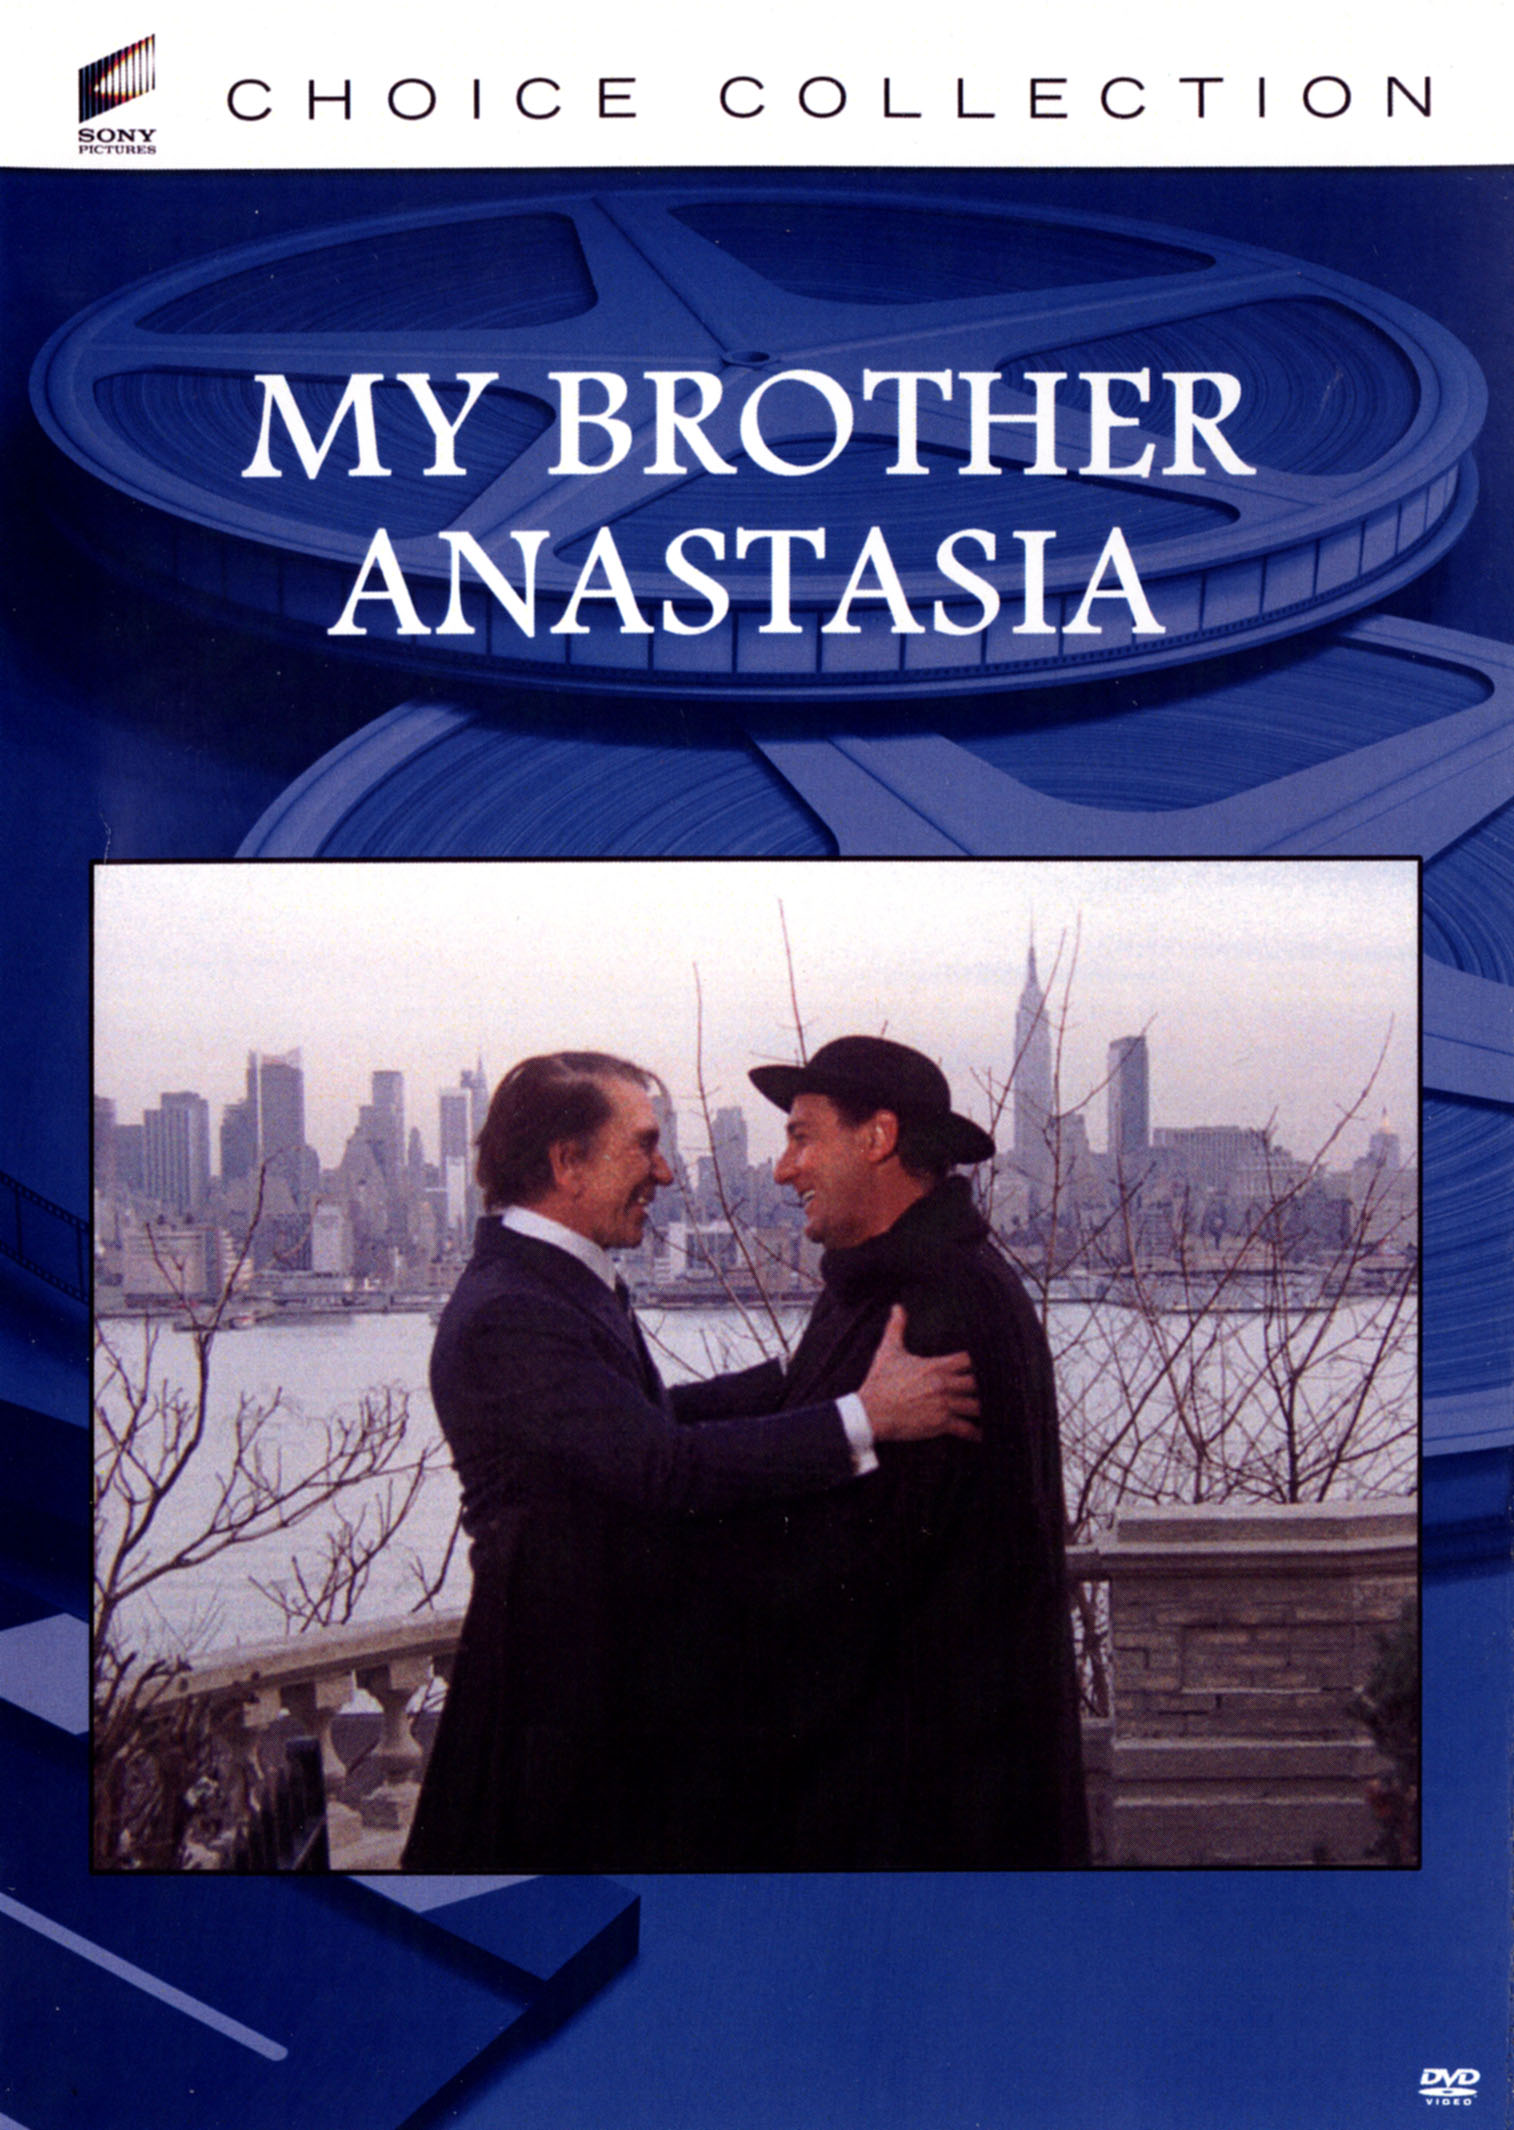 Anastasia [DVD] [1973]